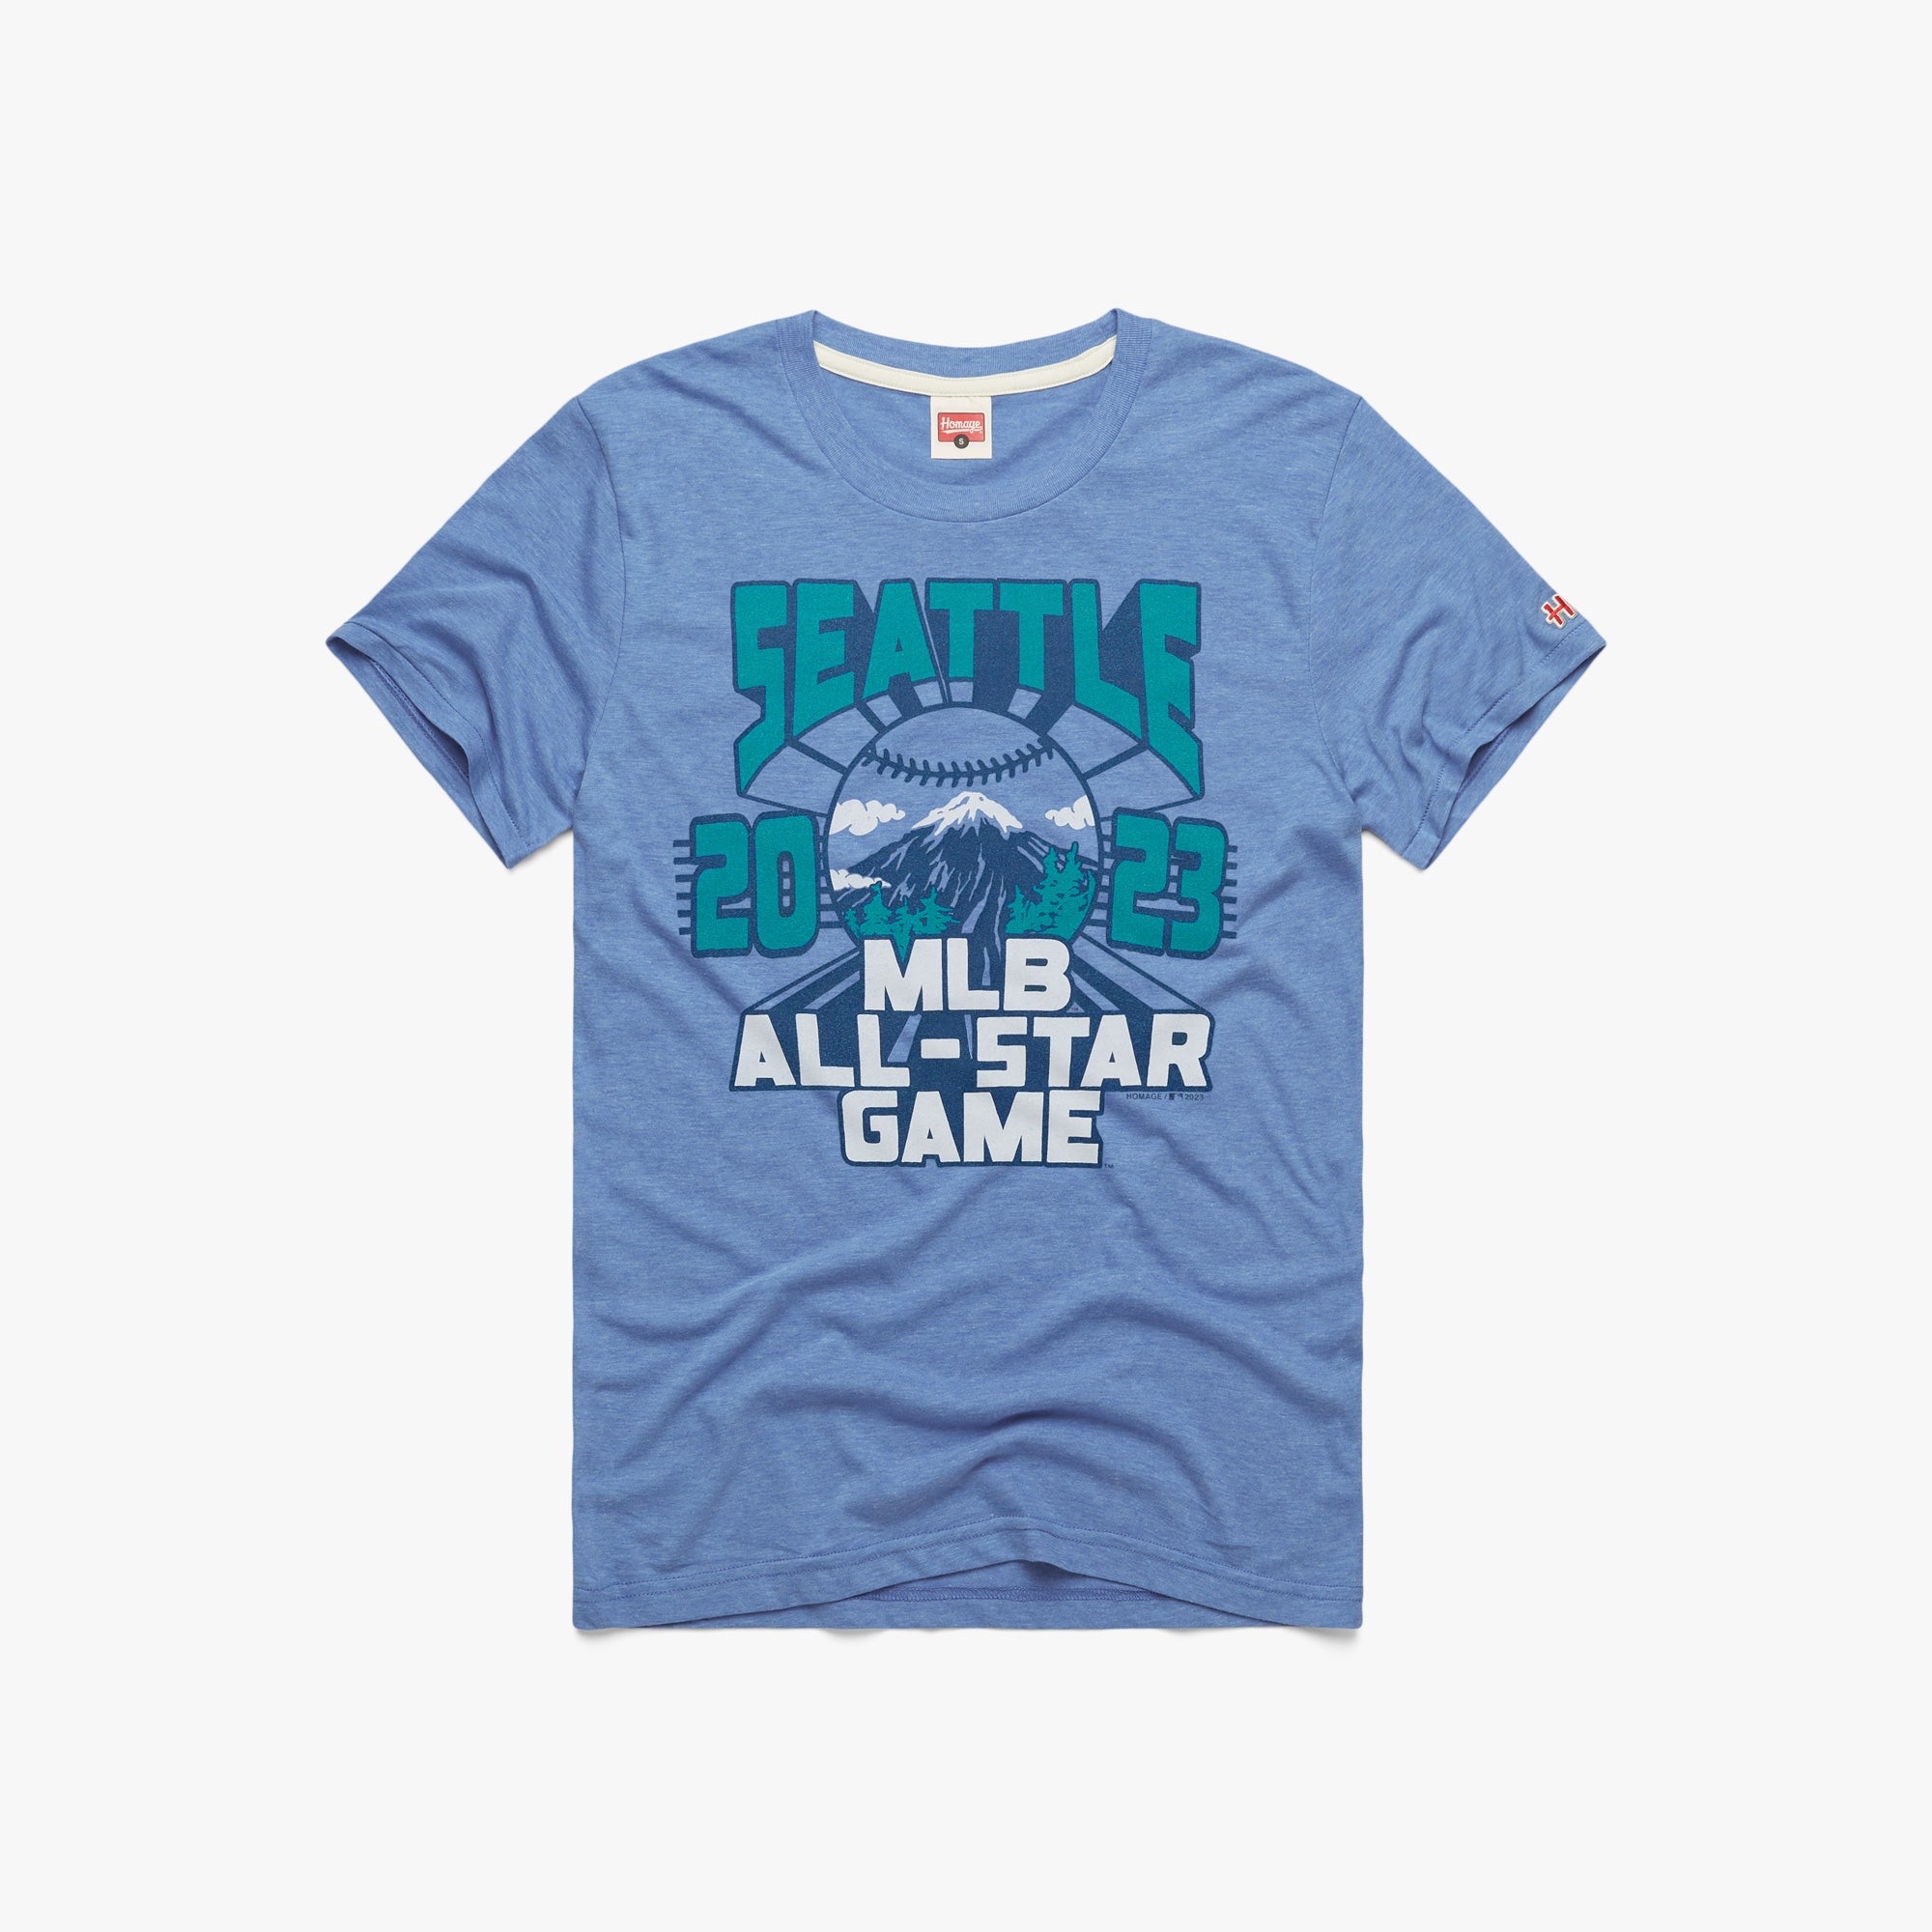 Tổng hợp 58 MLB all star game shirt siêu hot  trieuson5